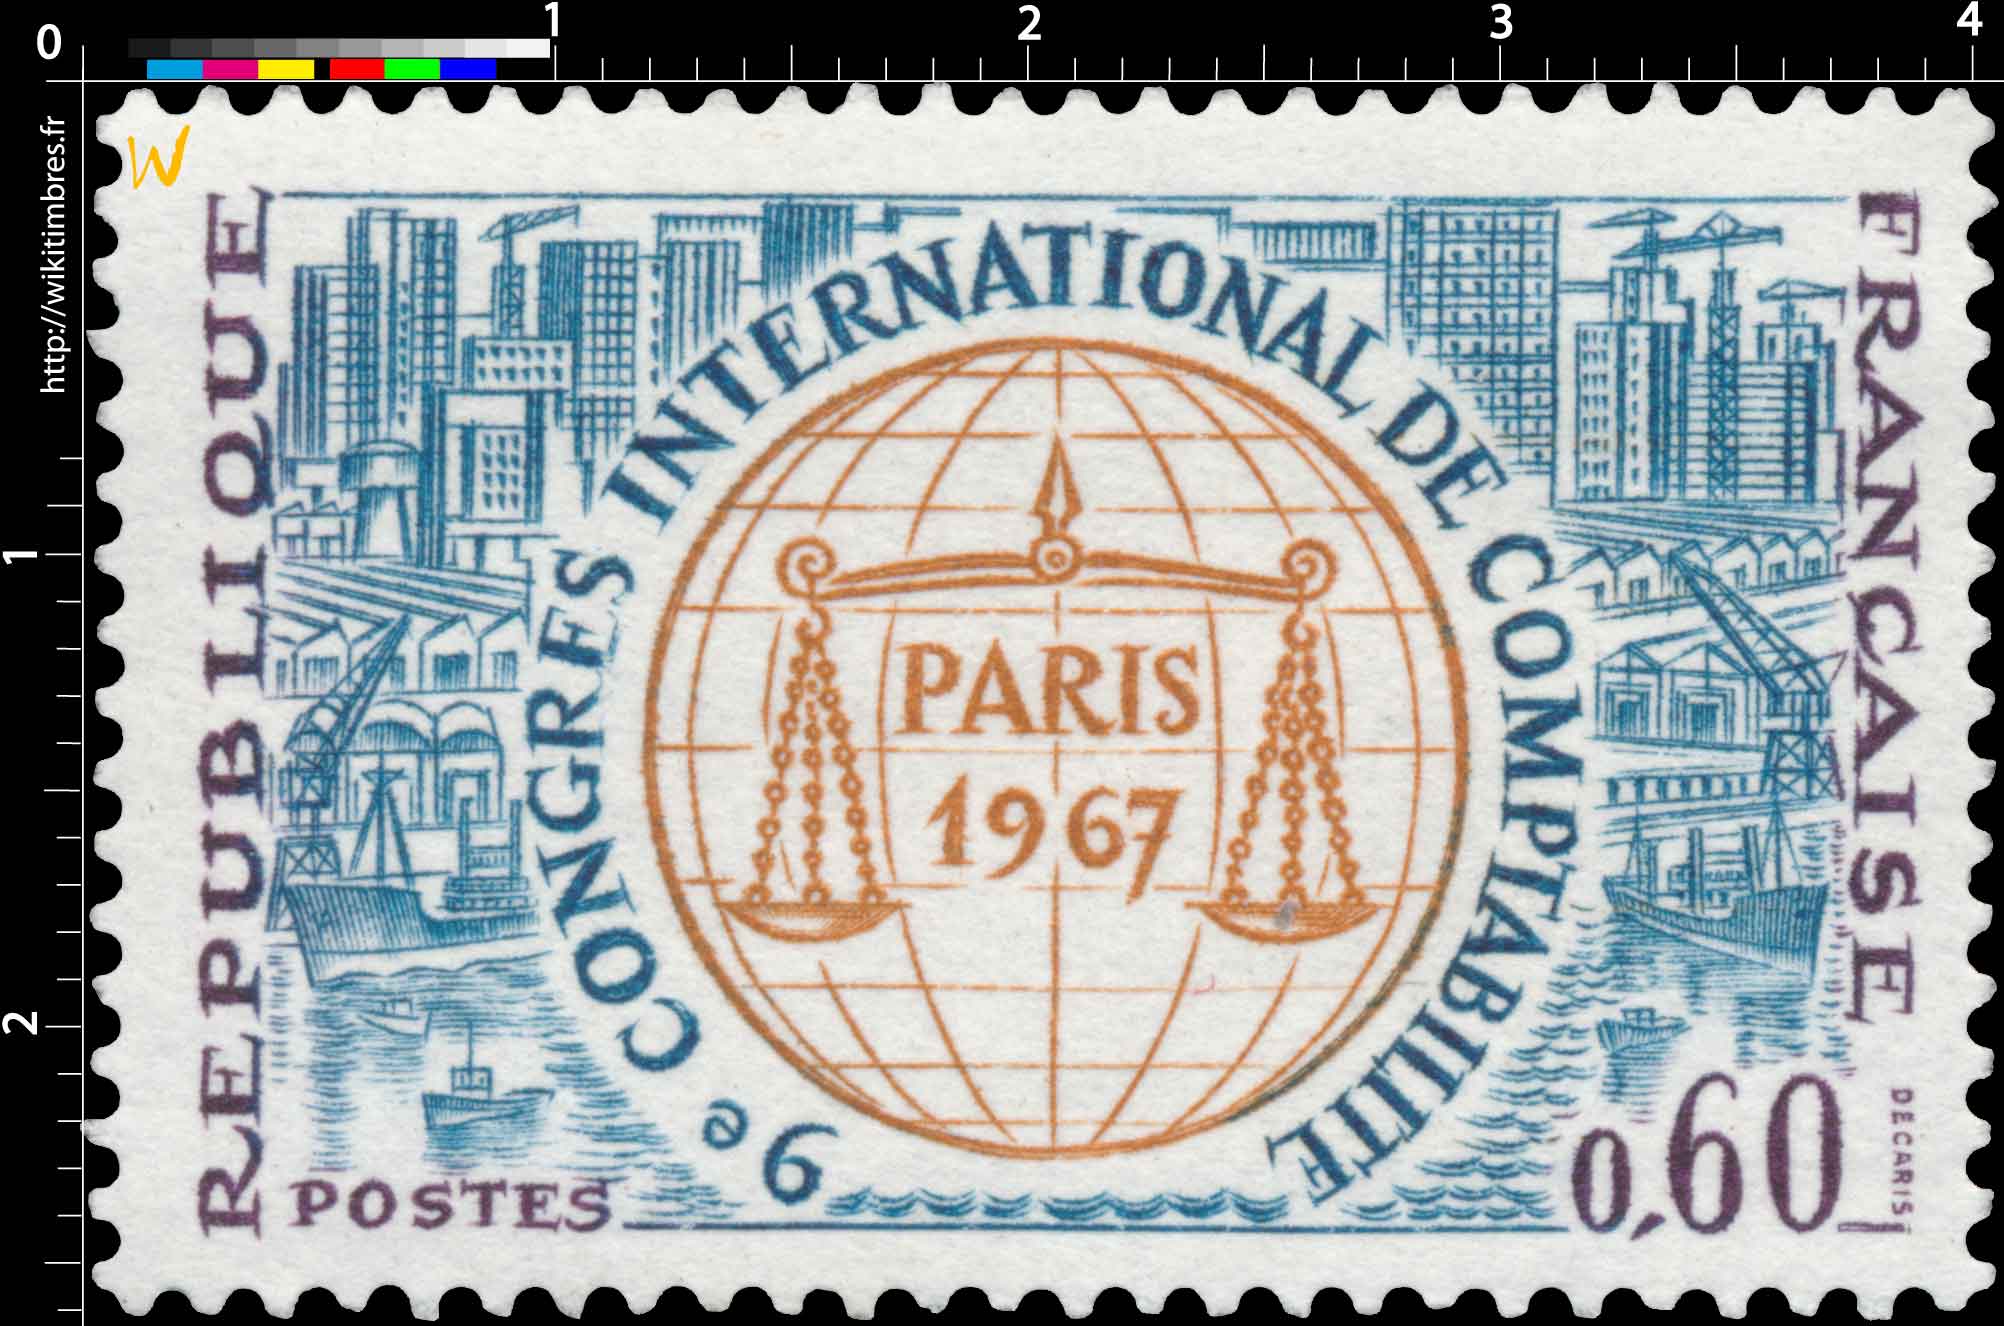 9e CONGRÈS INTERNATIONAL DE COMPTABILITÉ PARIS 1967